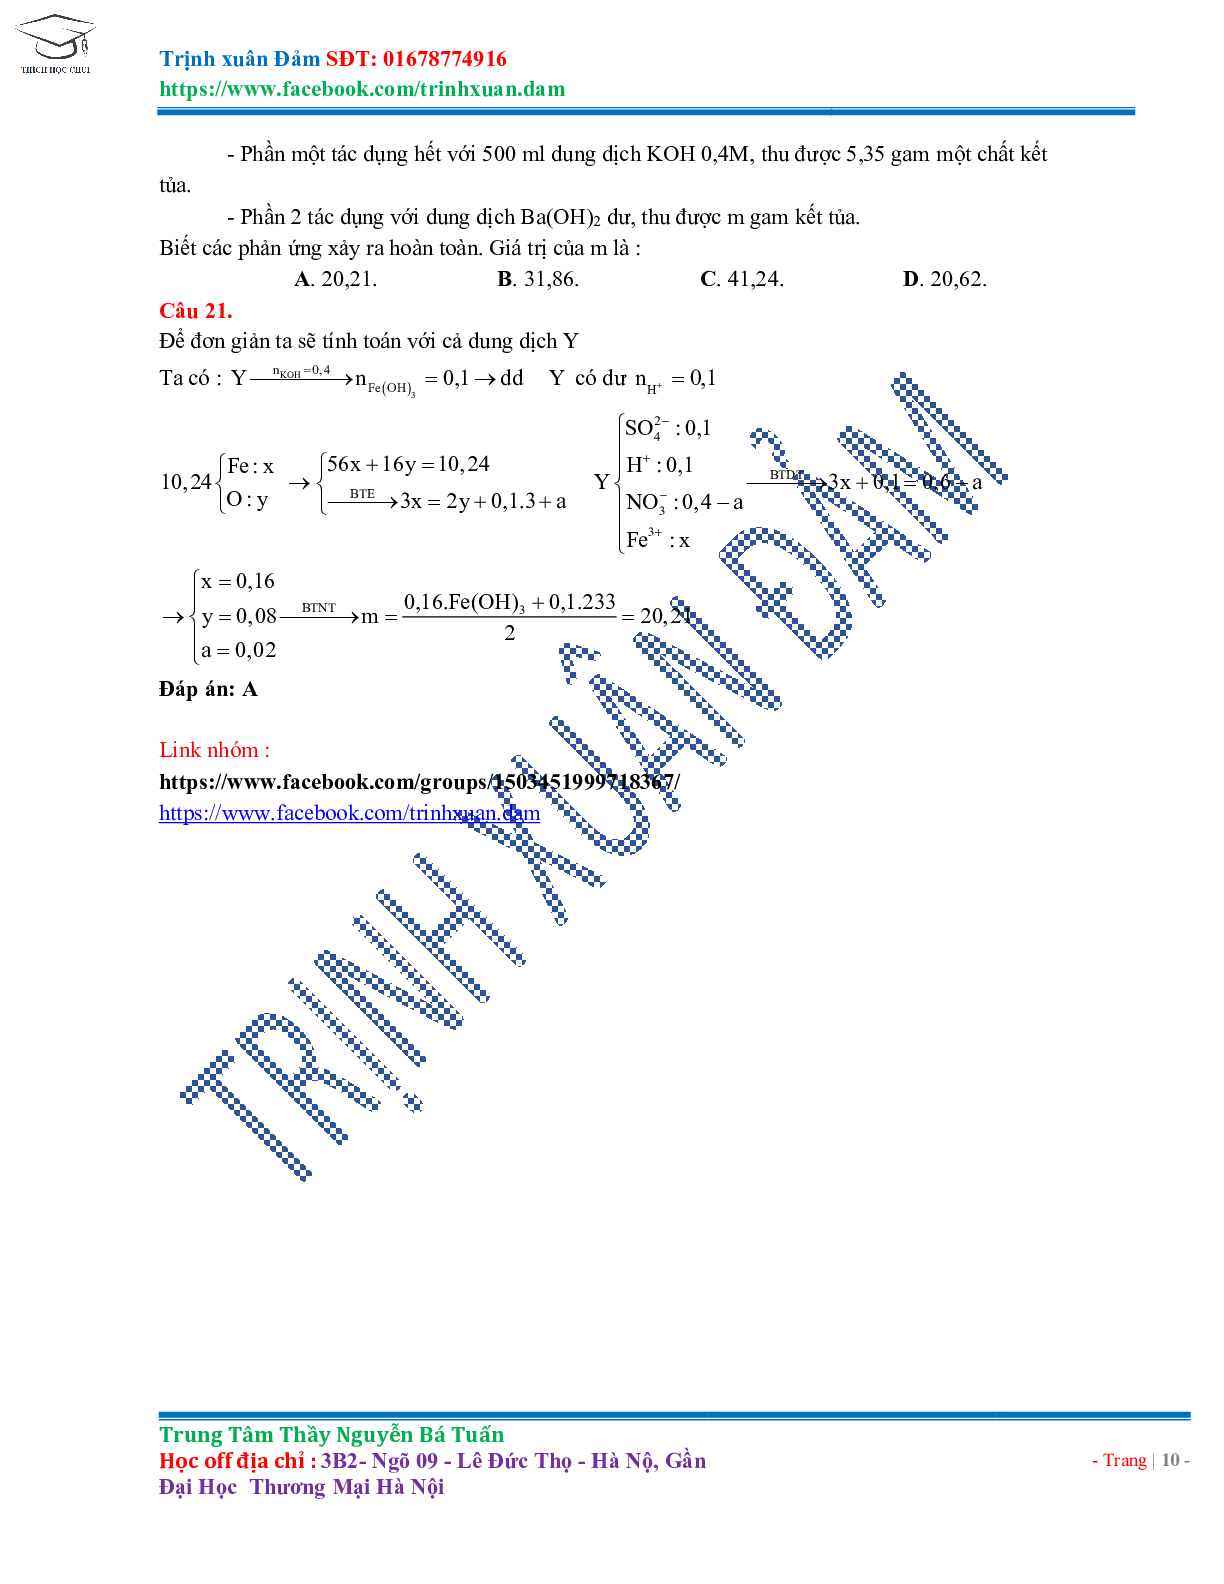 Bài toán chuyên đề HNO3 môn Hóa học lớp 11 (trang 10)